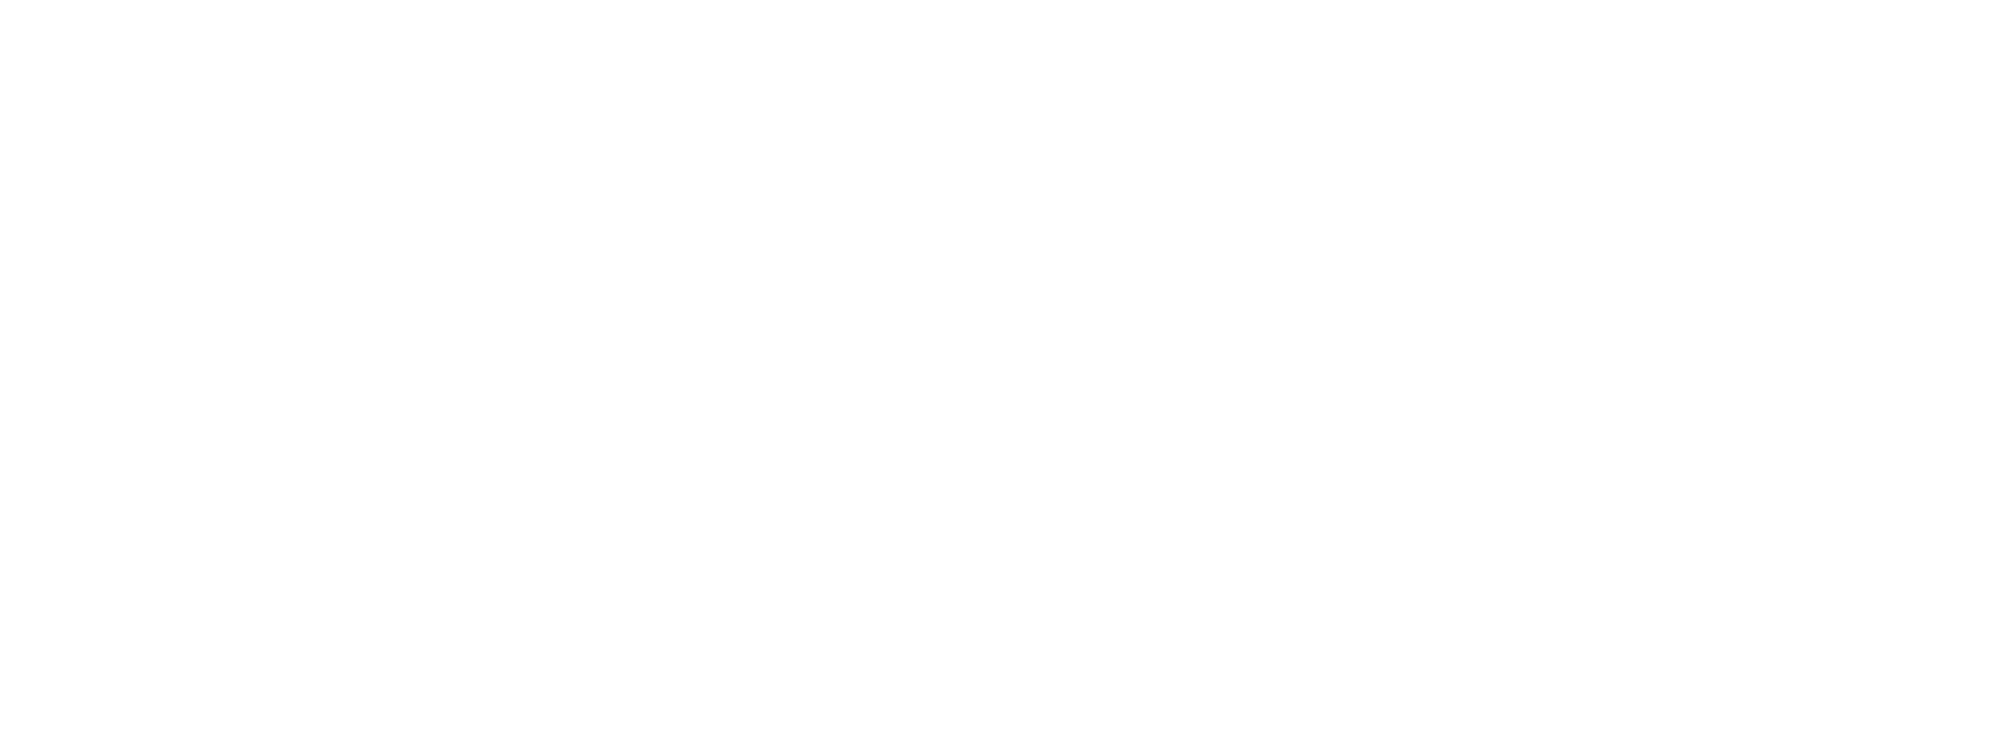 Taskify Blogi